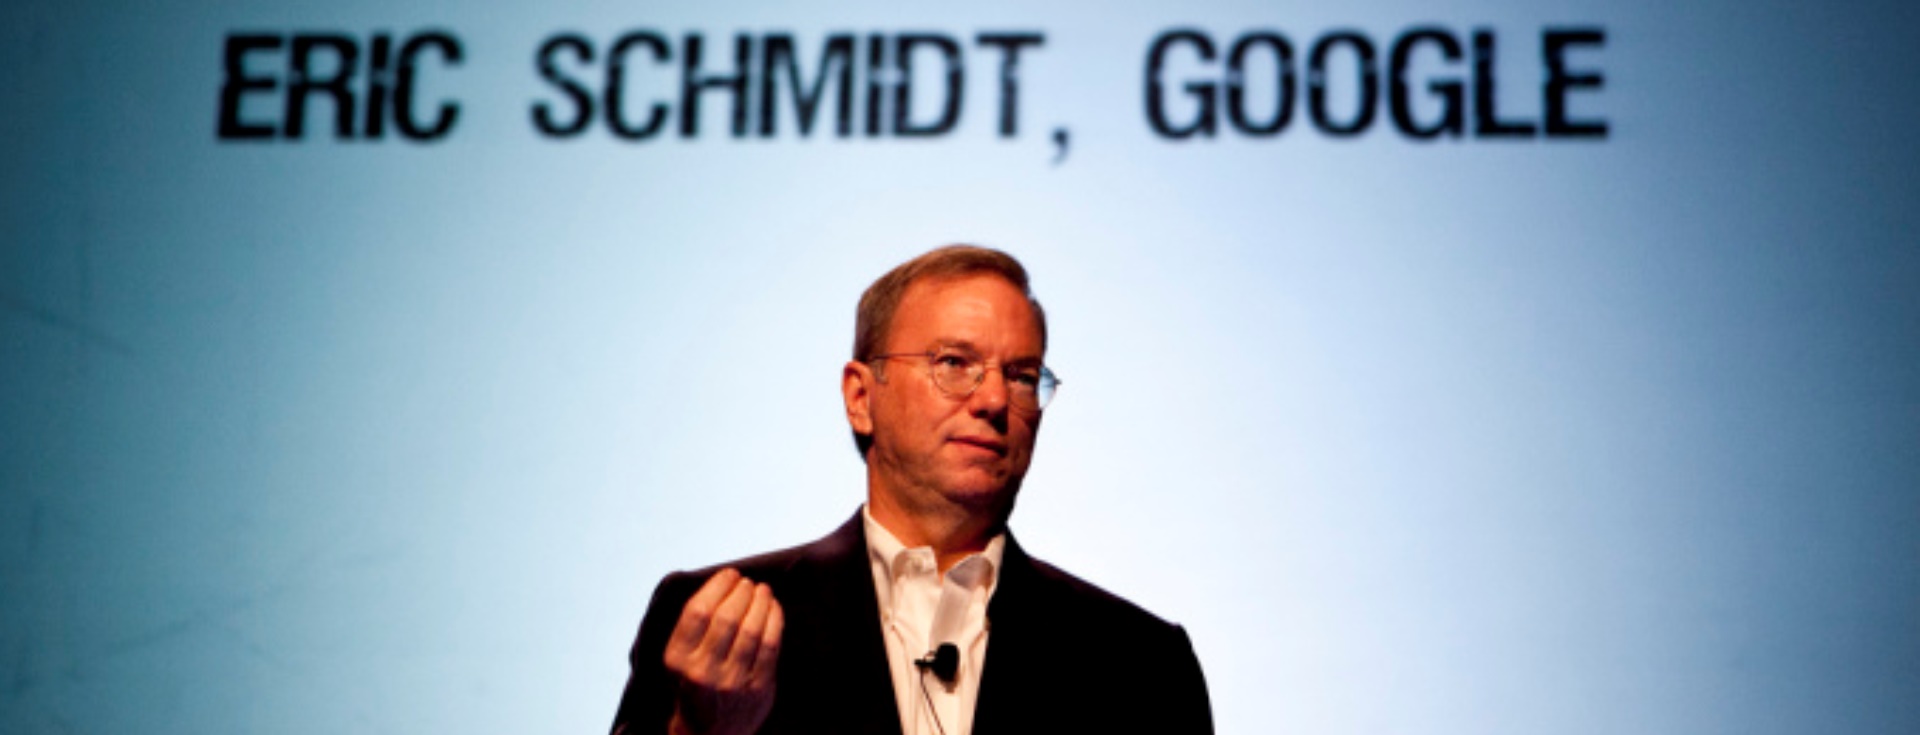 Google’ın Eric Schmidt’i Başarılı Bir Kariyerin Sırrını Paylaşıyor